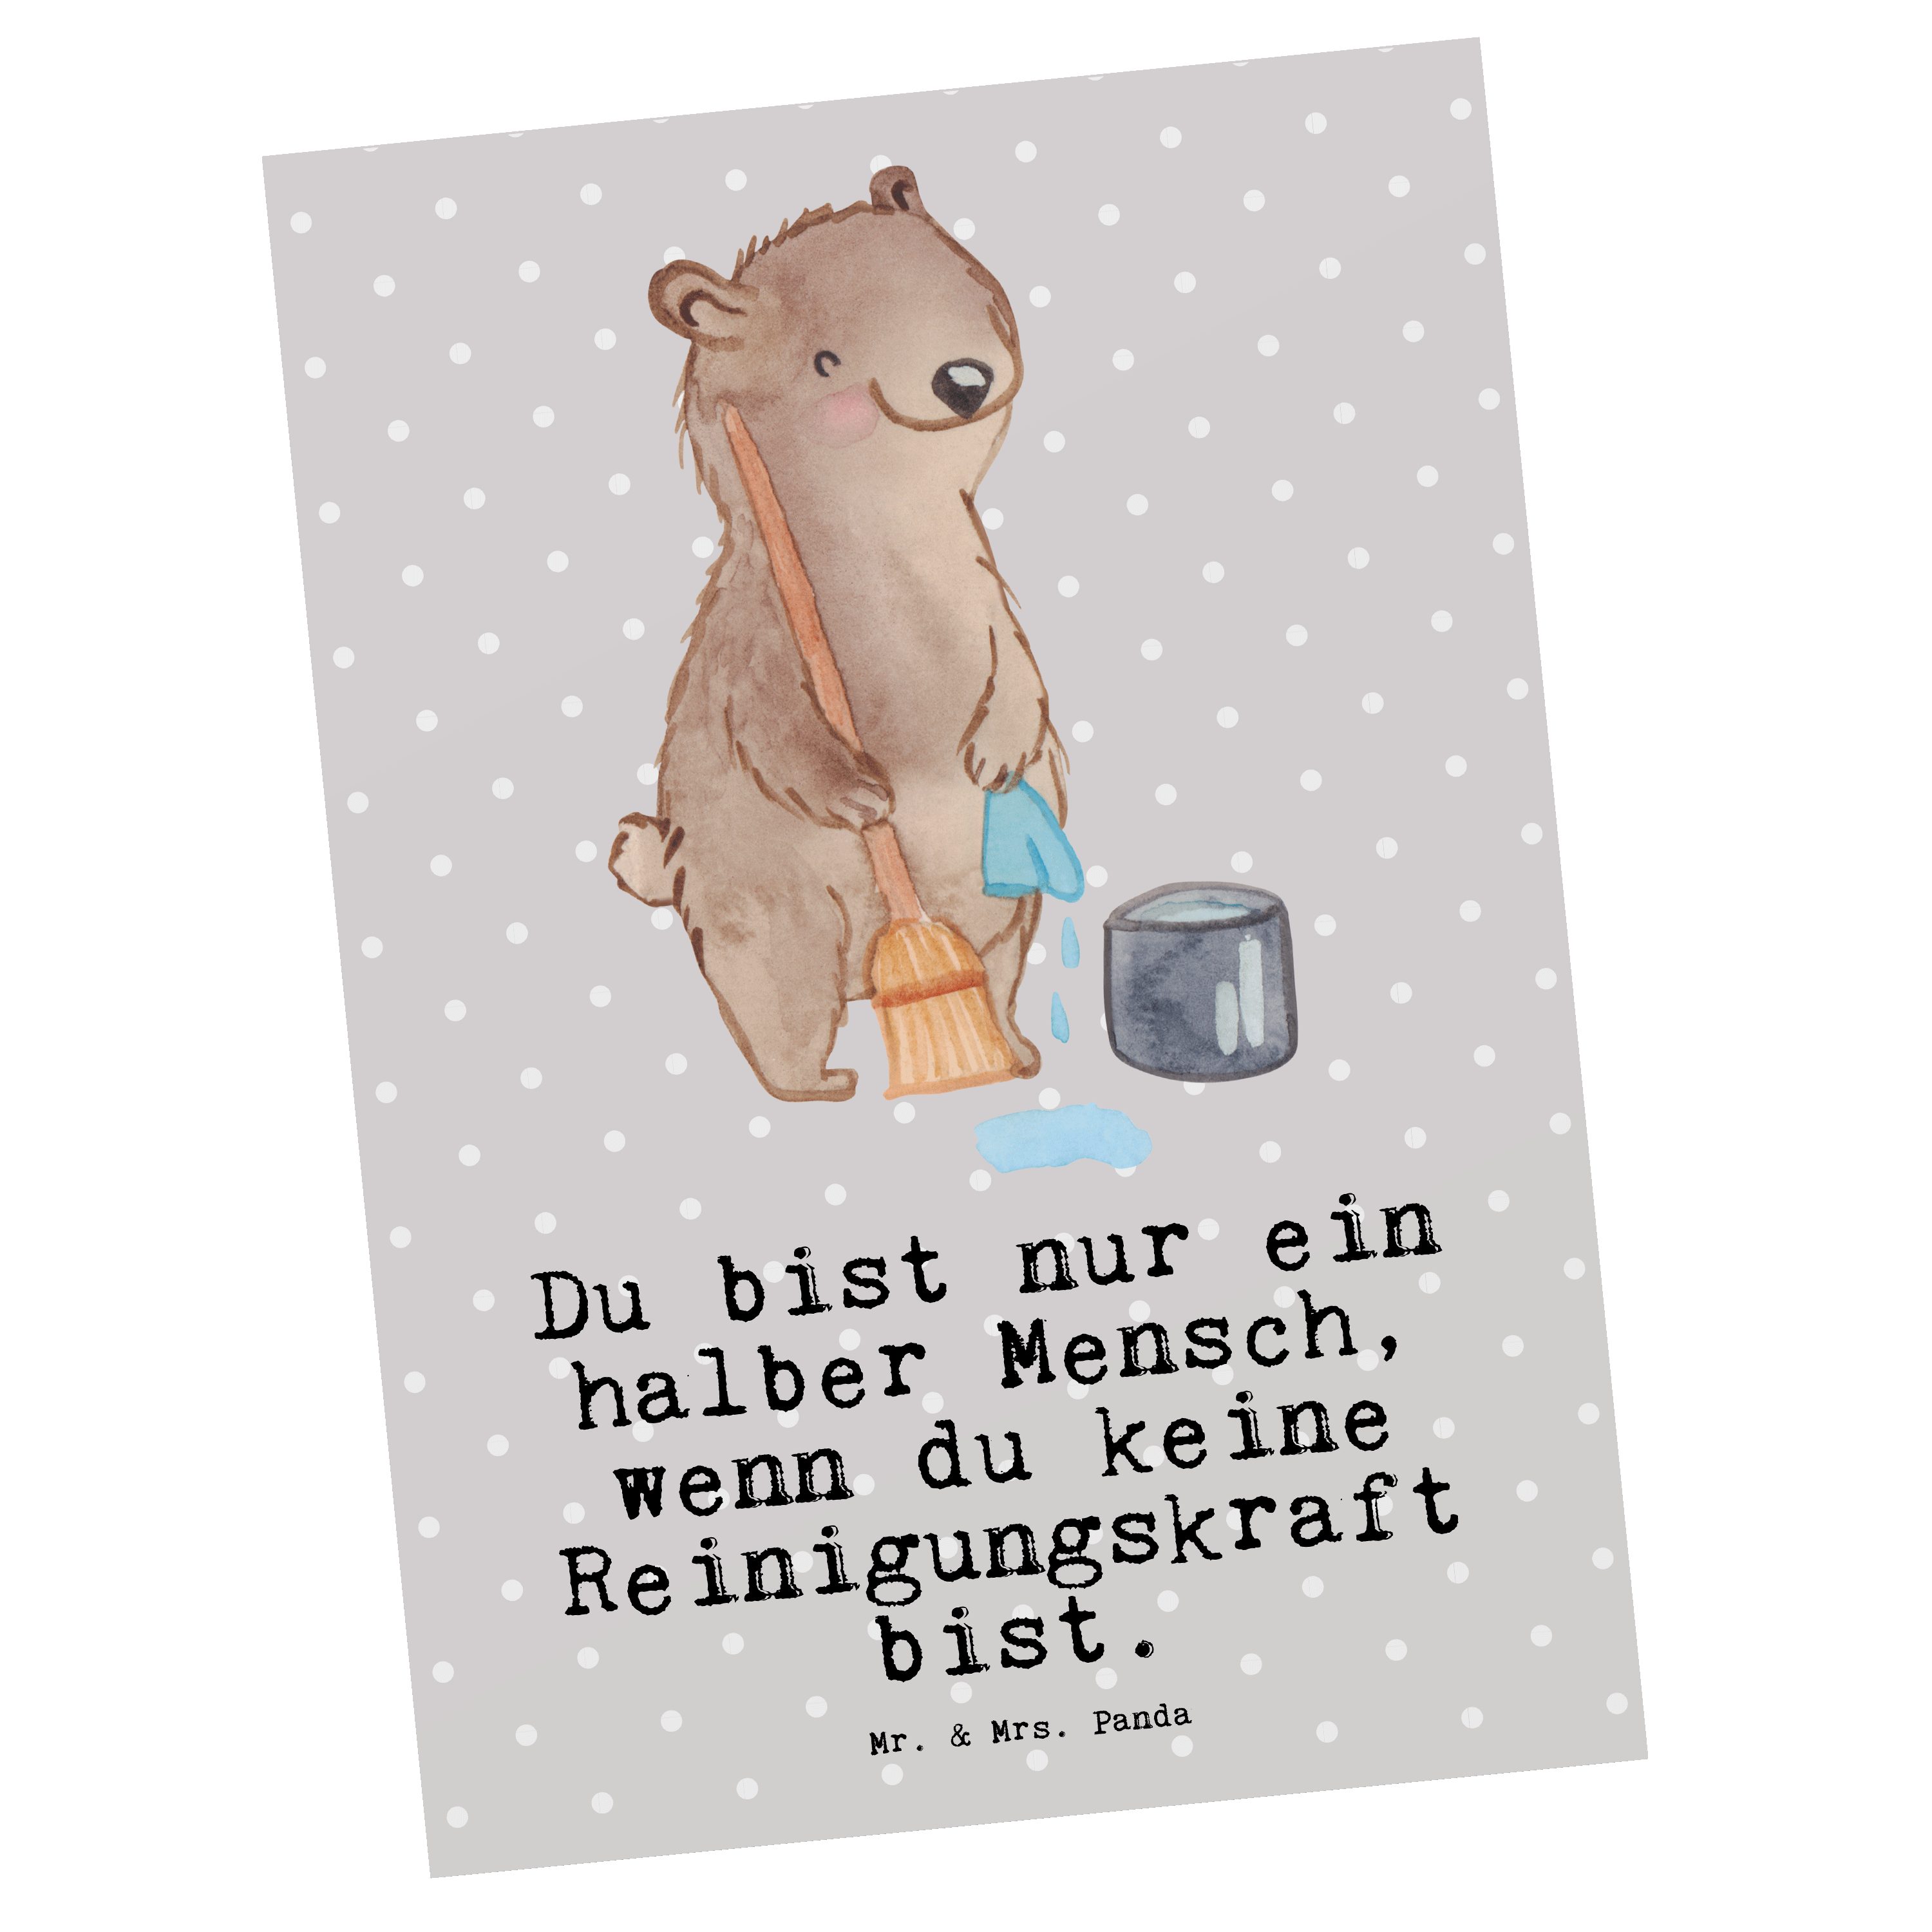 Mr. & Mrs. Panda Grau Geschenk, - Reinigungskraft - Postkarte mit Herz Da Pastell Geschenkkarte